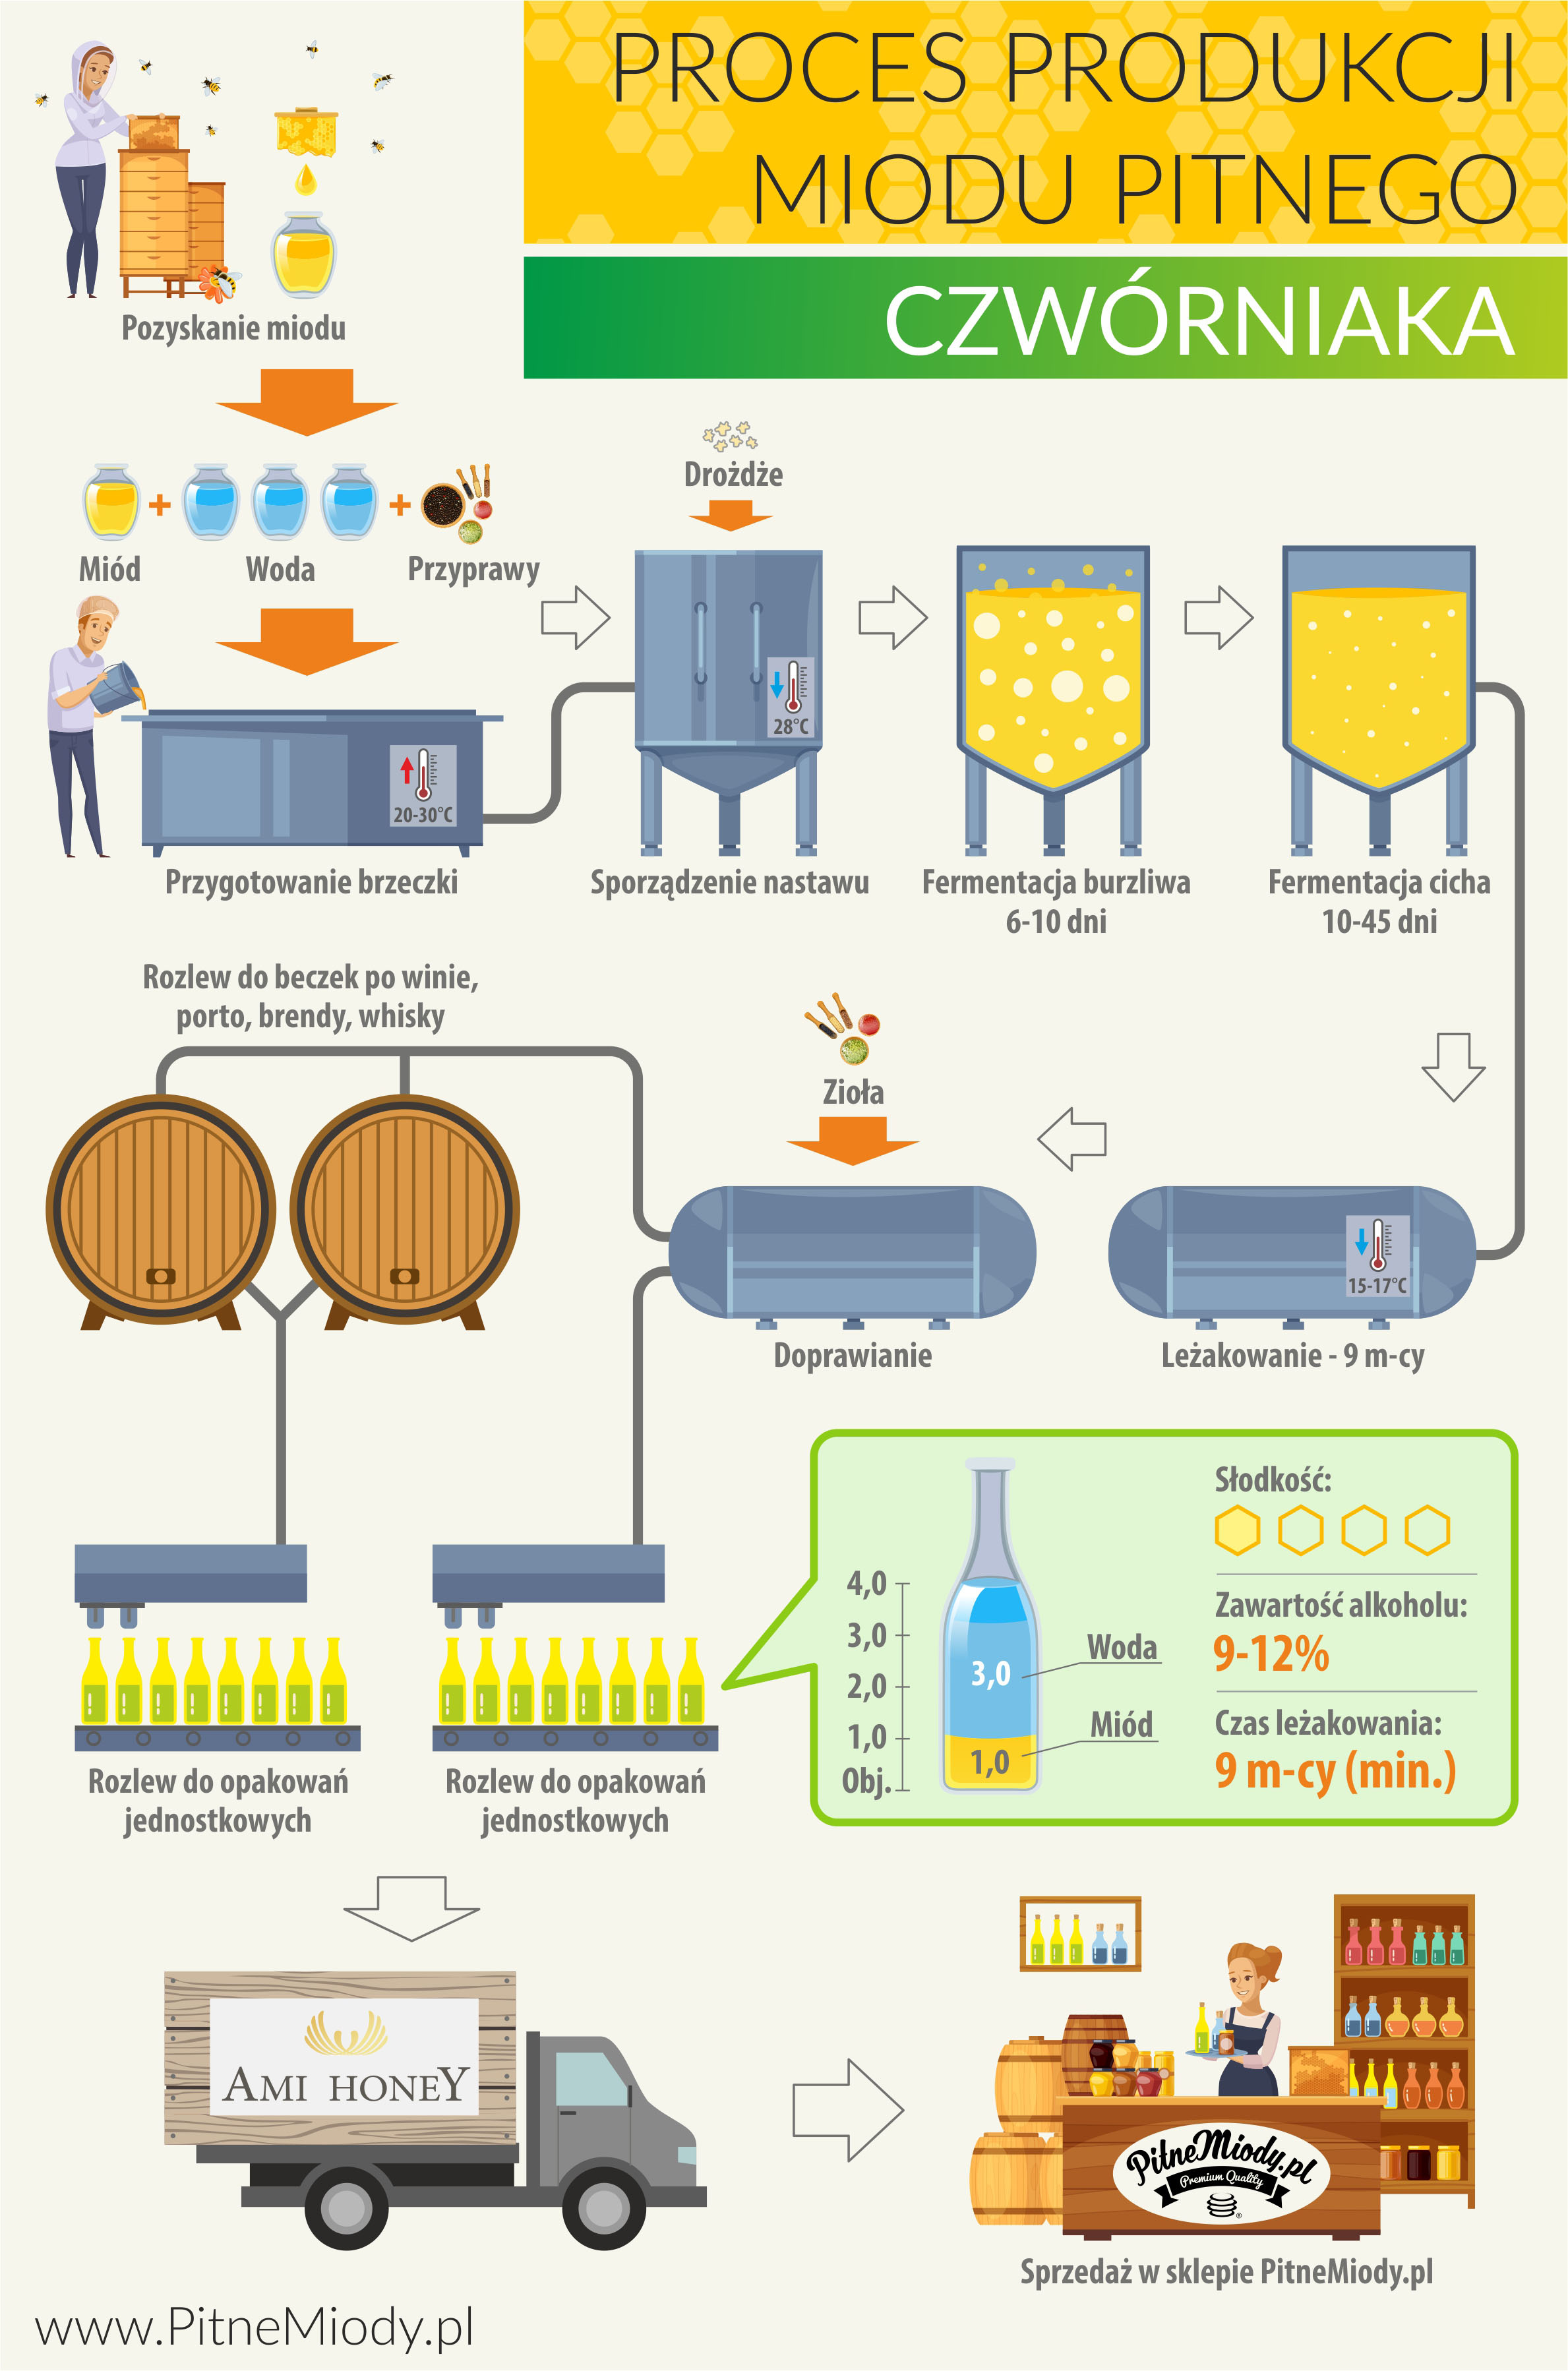 Proces produkcji miodu pitnego czwórniaka